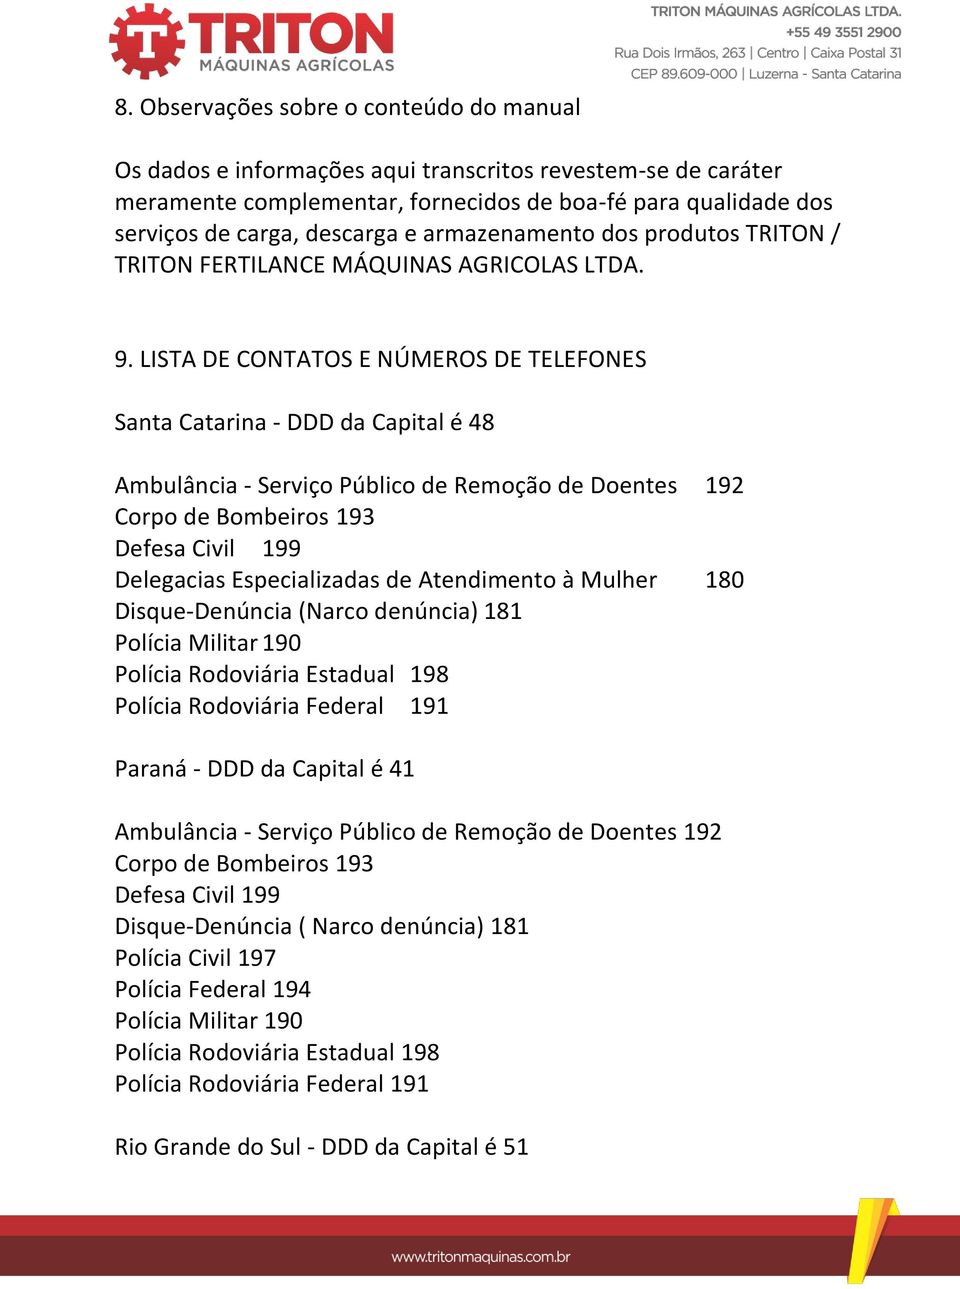 LISTA DE CONTATOS E NÚMEROS DE TELEFONES Santa Catarina - DDD da Capital é 48 Delegacias Especializadas de Atendimento à Mulher 180 Disque-Denúncia (Narco denúncia) 181 Polícia